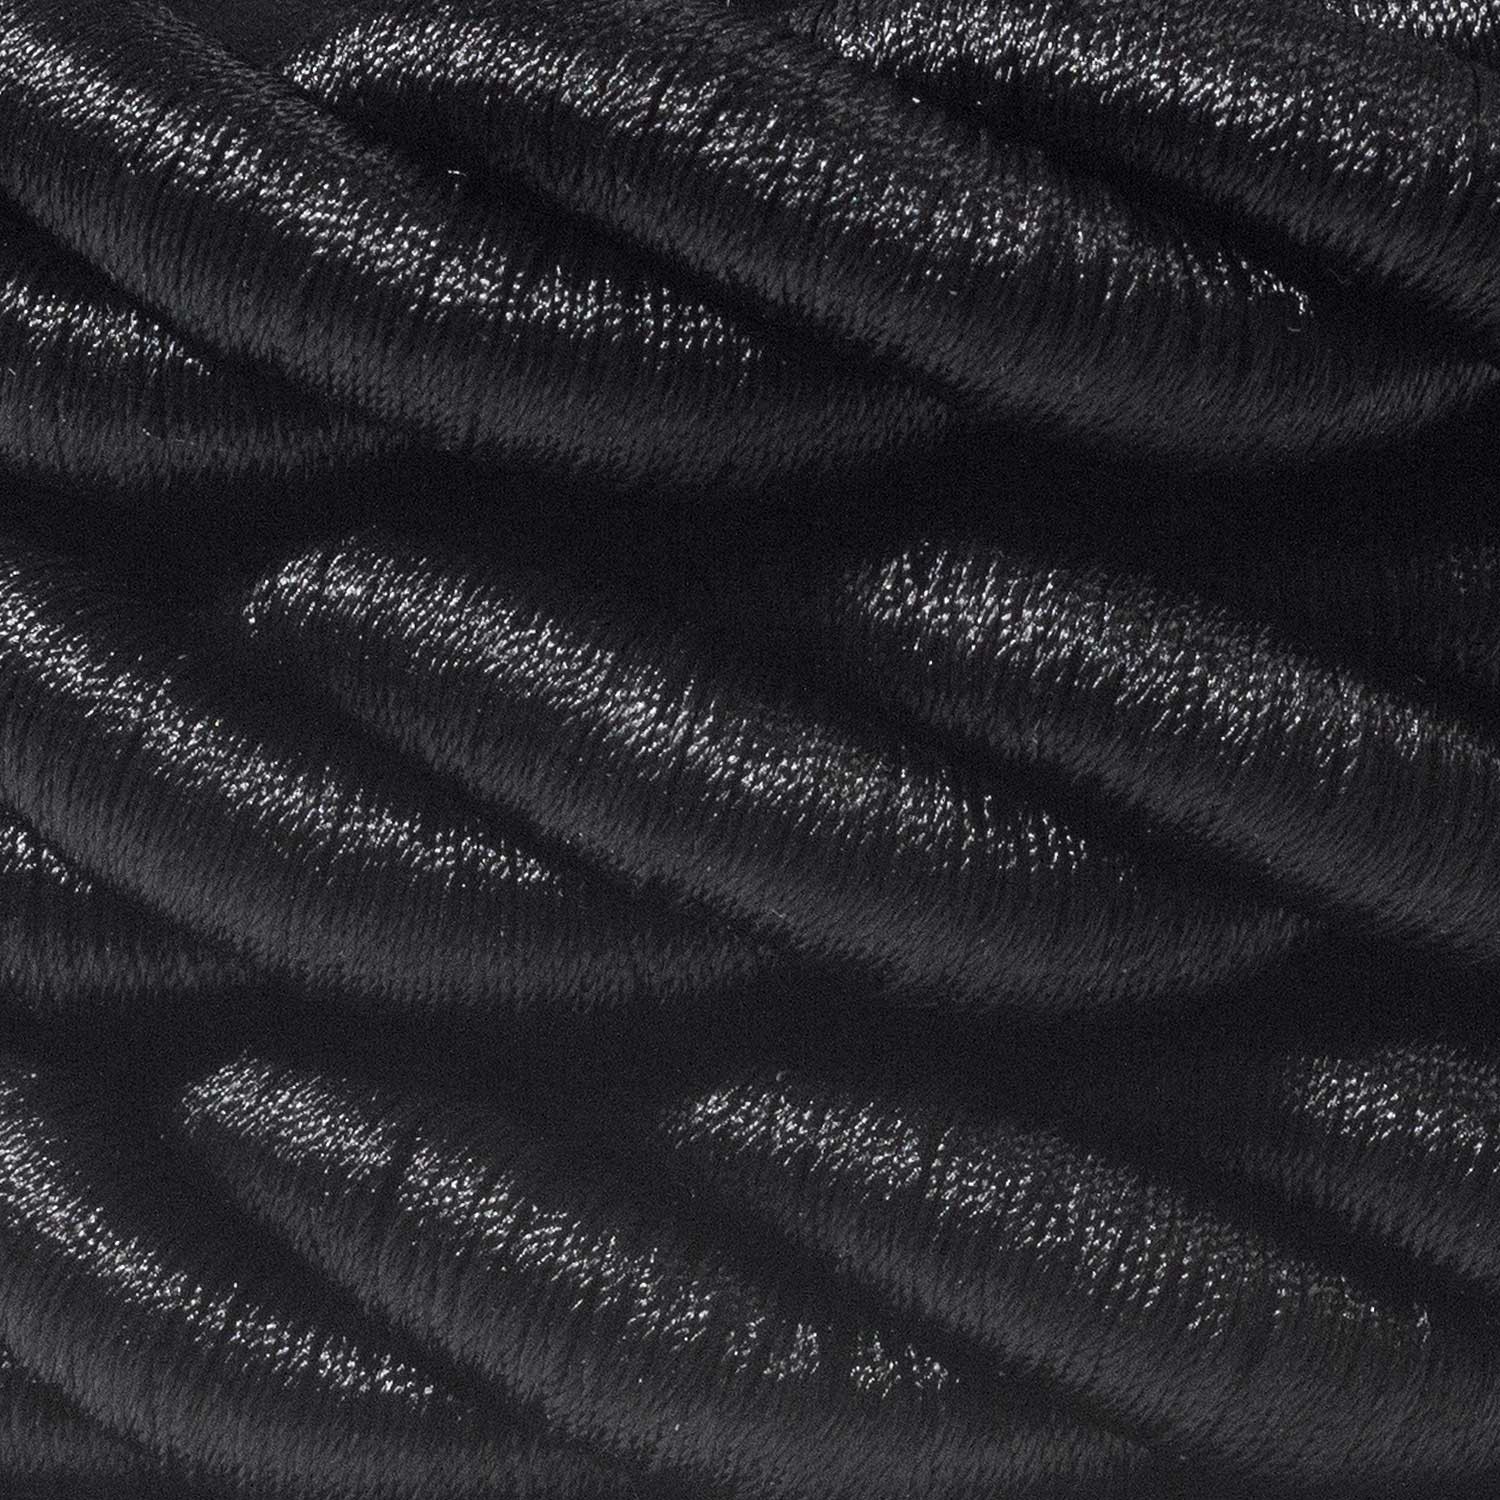 2XL elkabel 3x0,75. Glansig svart textil. Diameter 24mm.